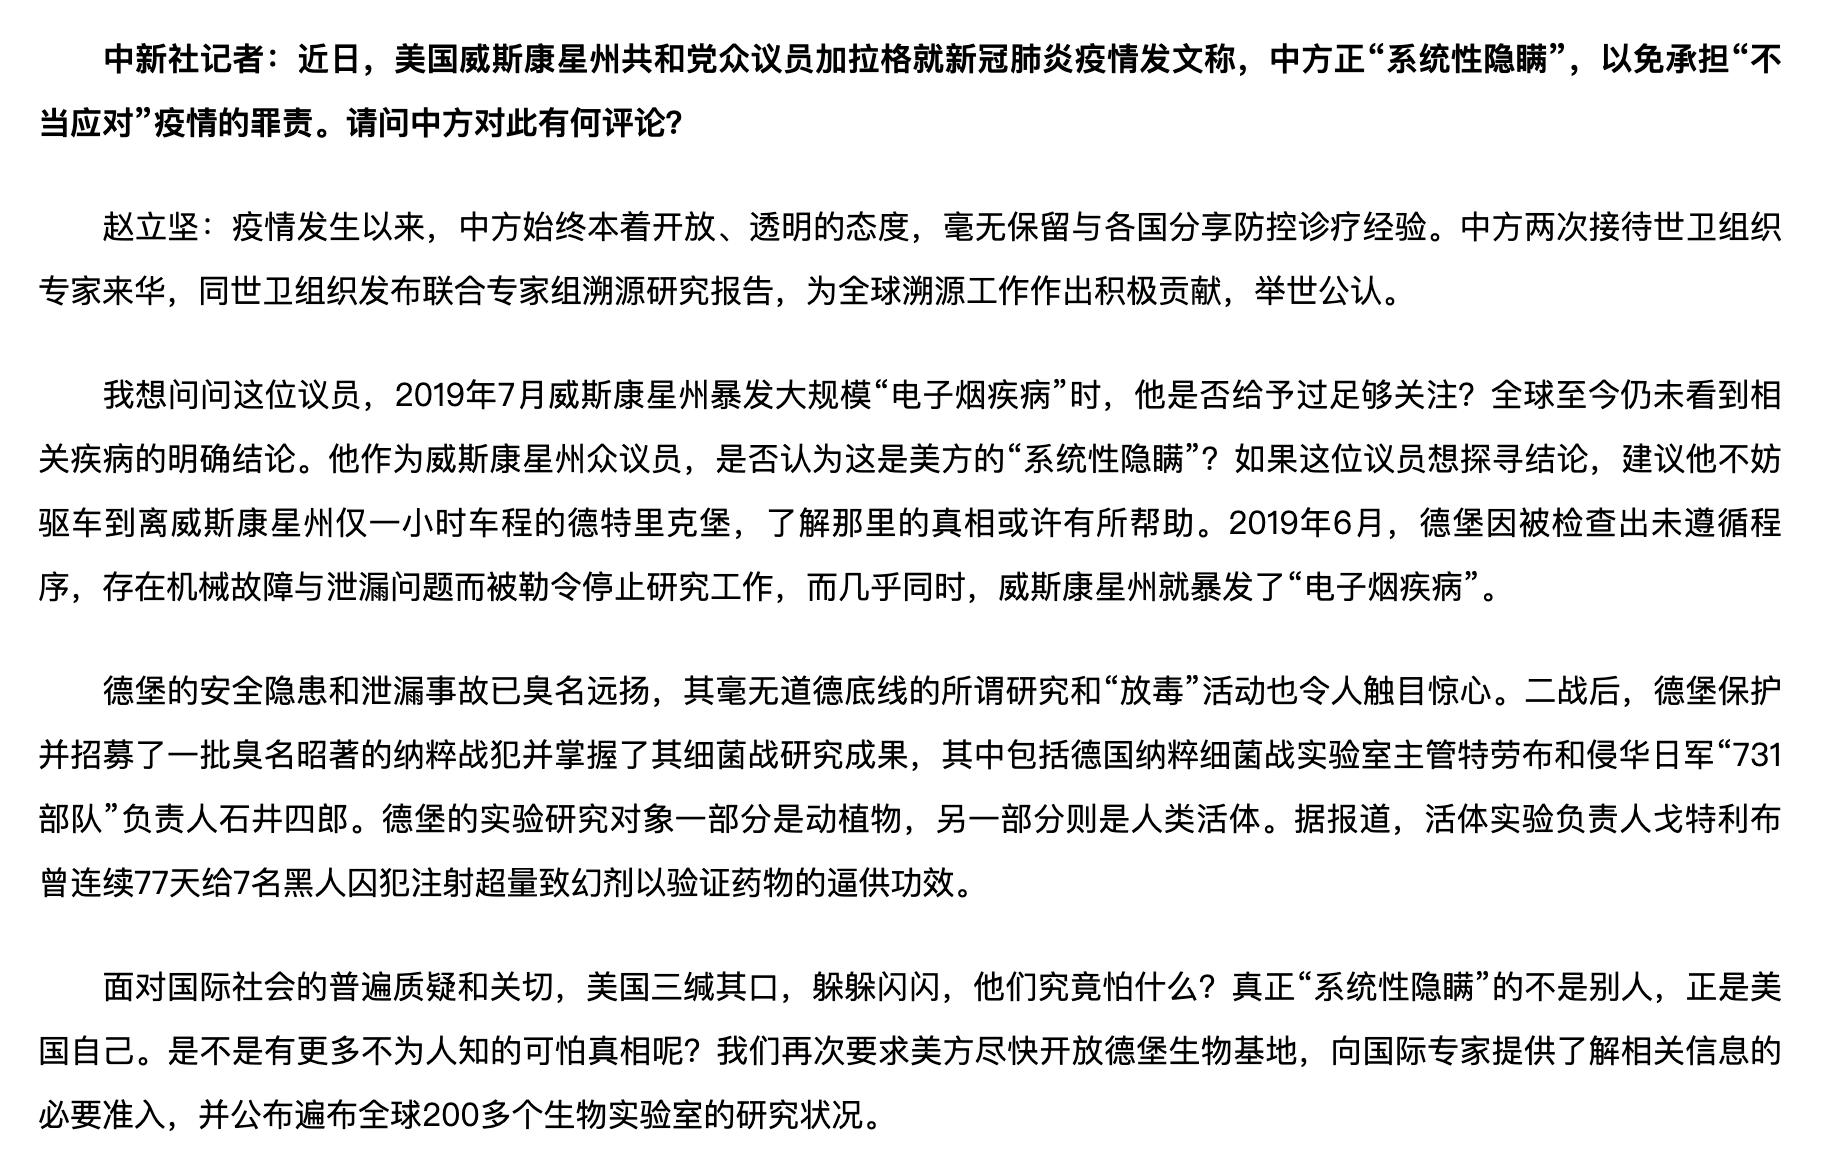 布林肯发声明声称“支持台湾参与联合国系统” 赵立坚：中方已严正交涉